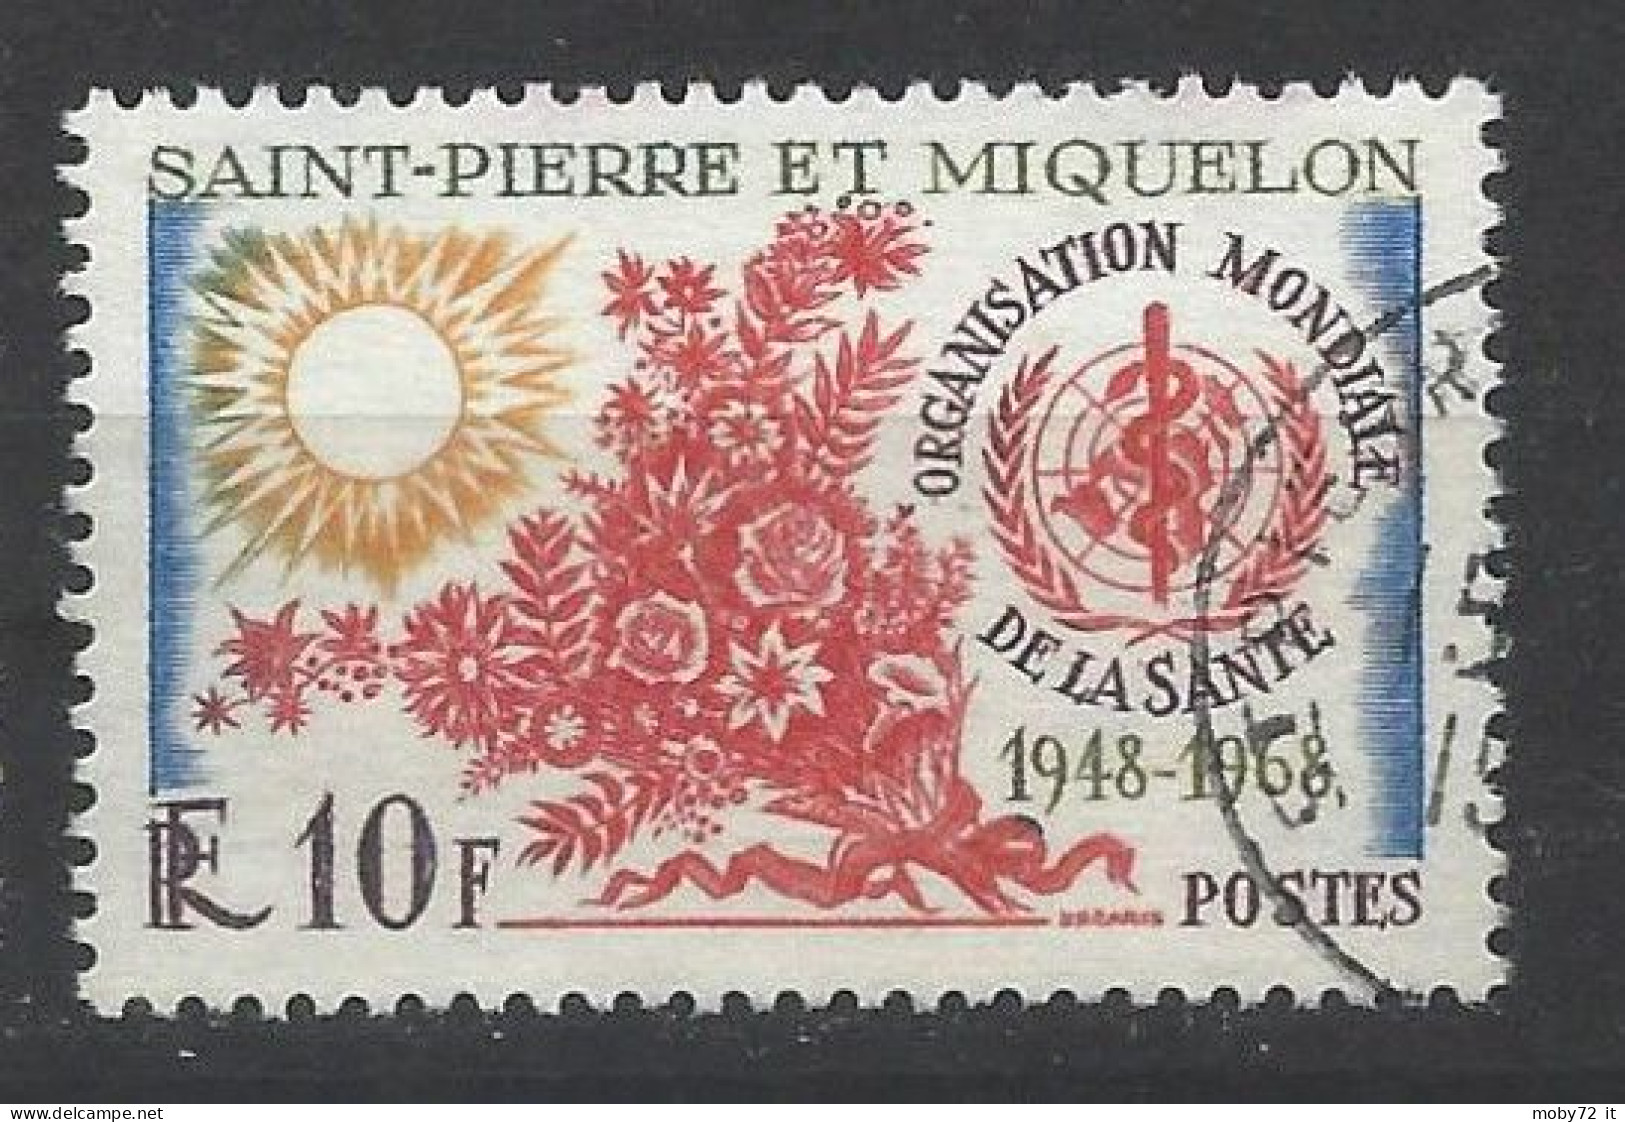 Saint-Pierre Et Miquelon - 1968 - Usato/used - WHO - Mi N. 425 - Covers & Documents